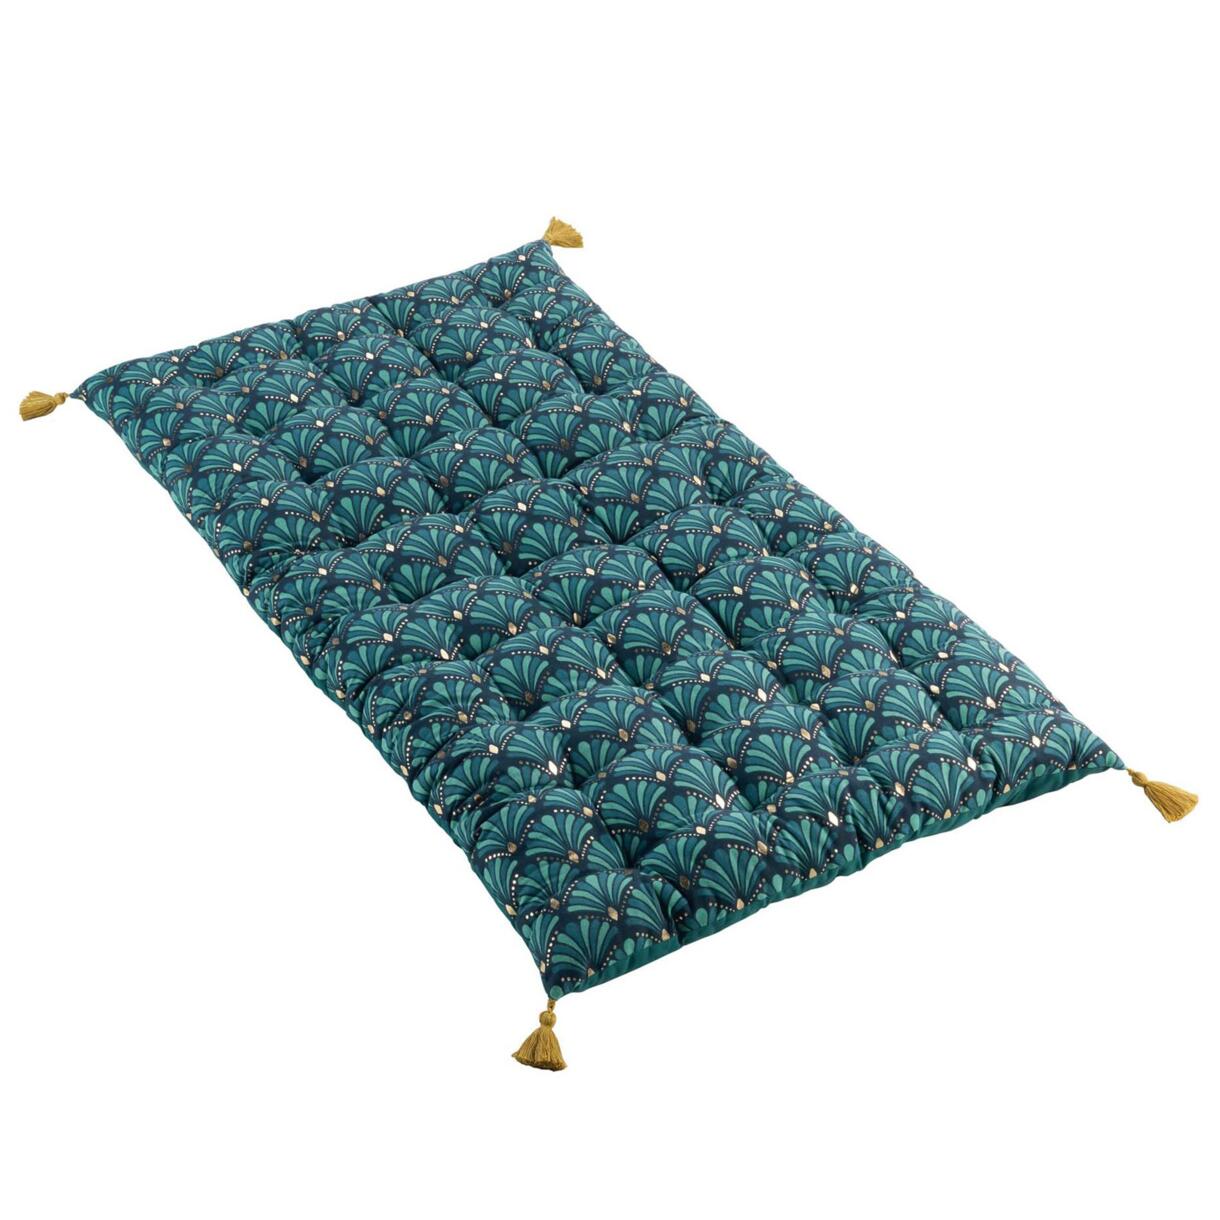 Materassino da pavimento (60 x 120 cm) Artchic Blu anatra 1